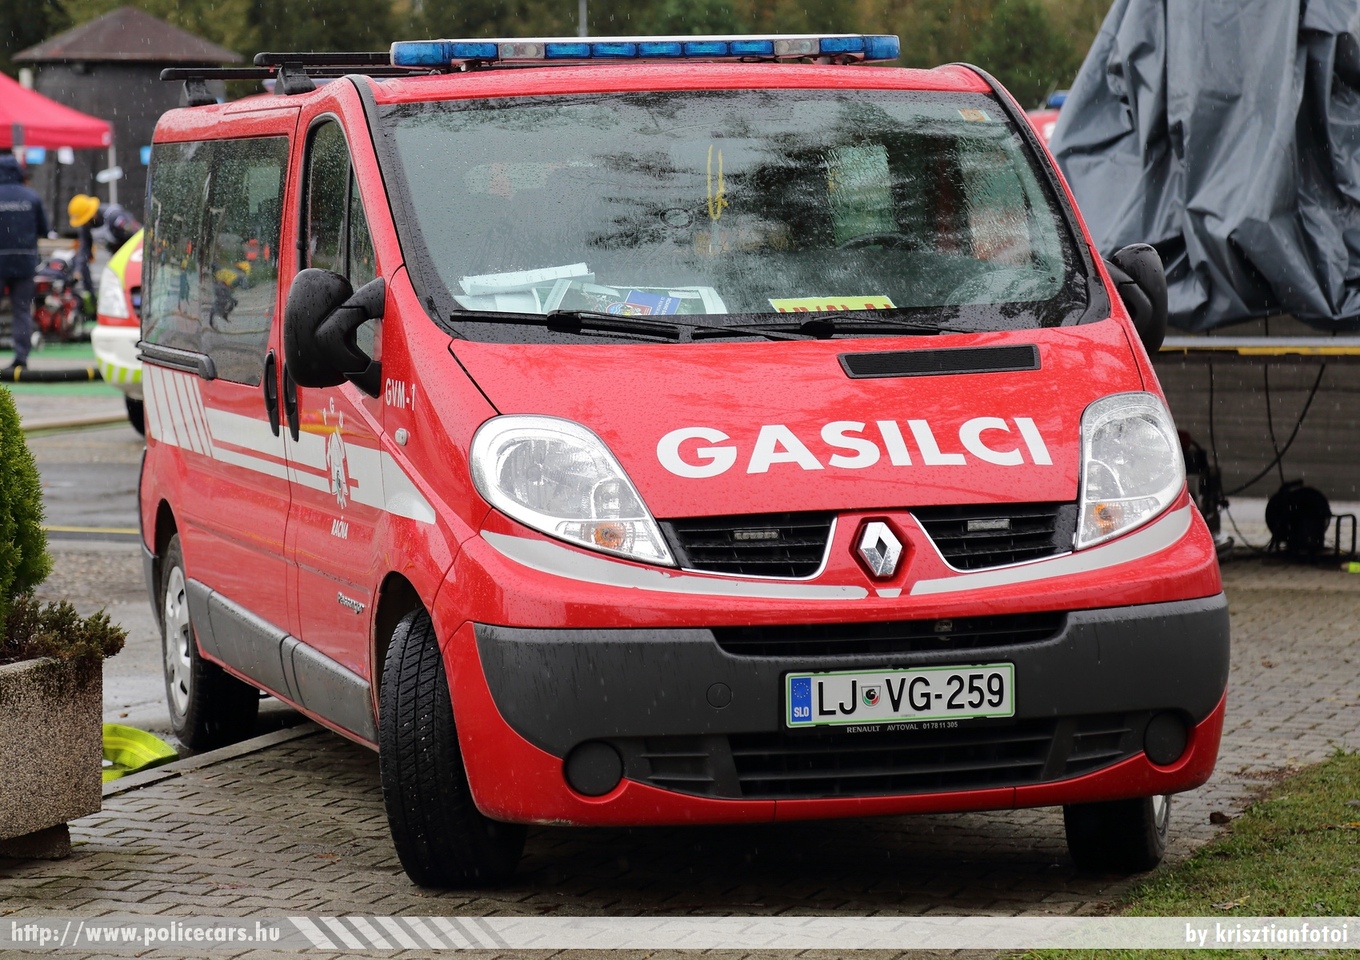 Renault Trafic, PGD Racna, fotó: krisztianfotoi
Keywords: szlovén Szlovénia tûzoltóautó tûzoltóság tûzoltó slovenian Slovenia fire firetruck